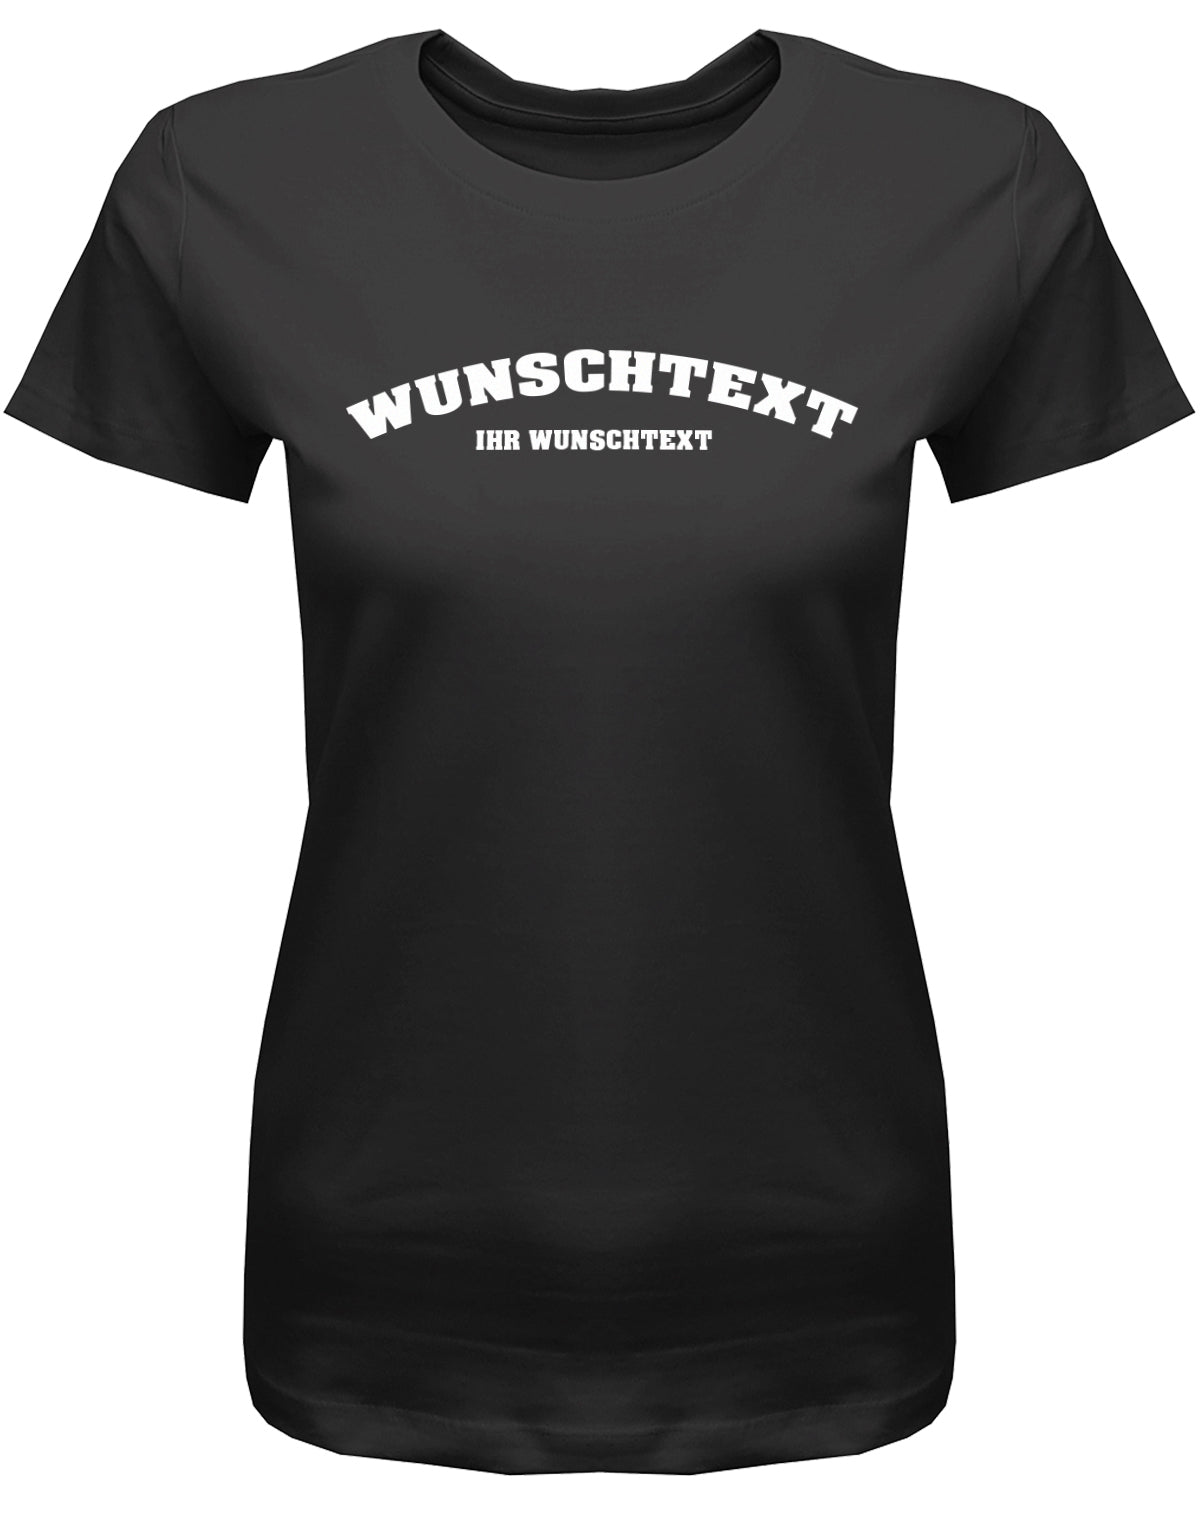 Frauen Tshirt mit Wunschtext.  Abgerundeter Text im Collage-Style.  Schwarz